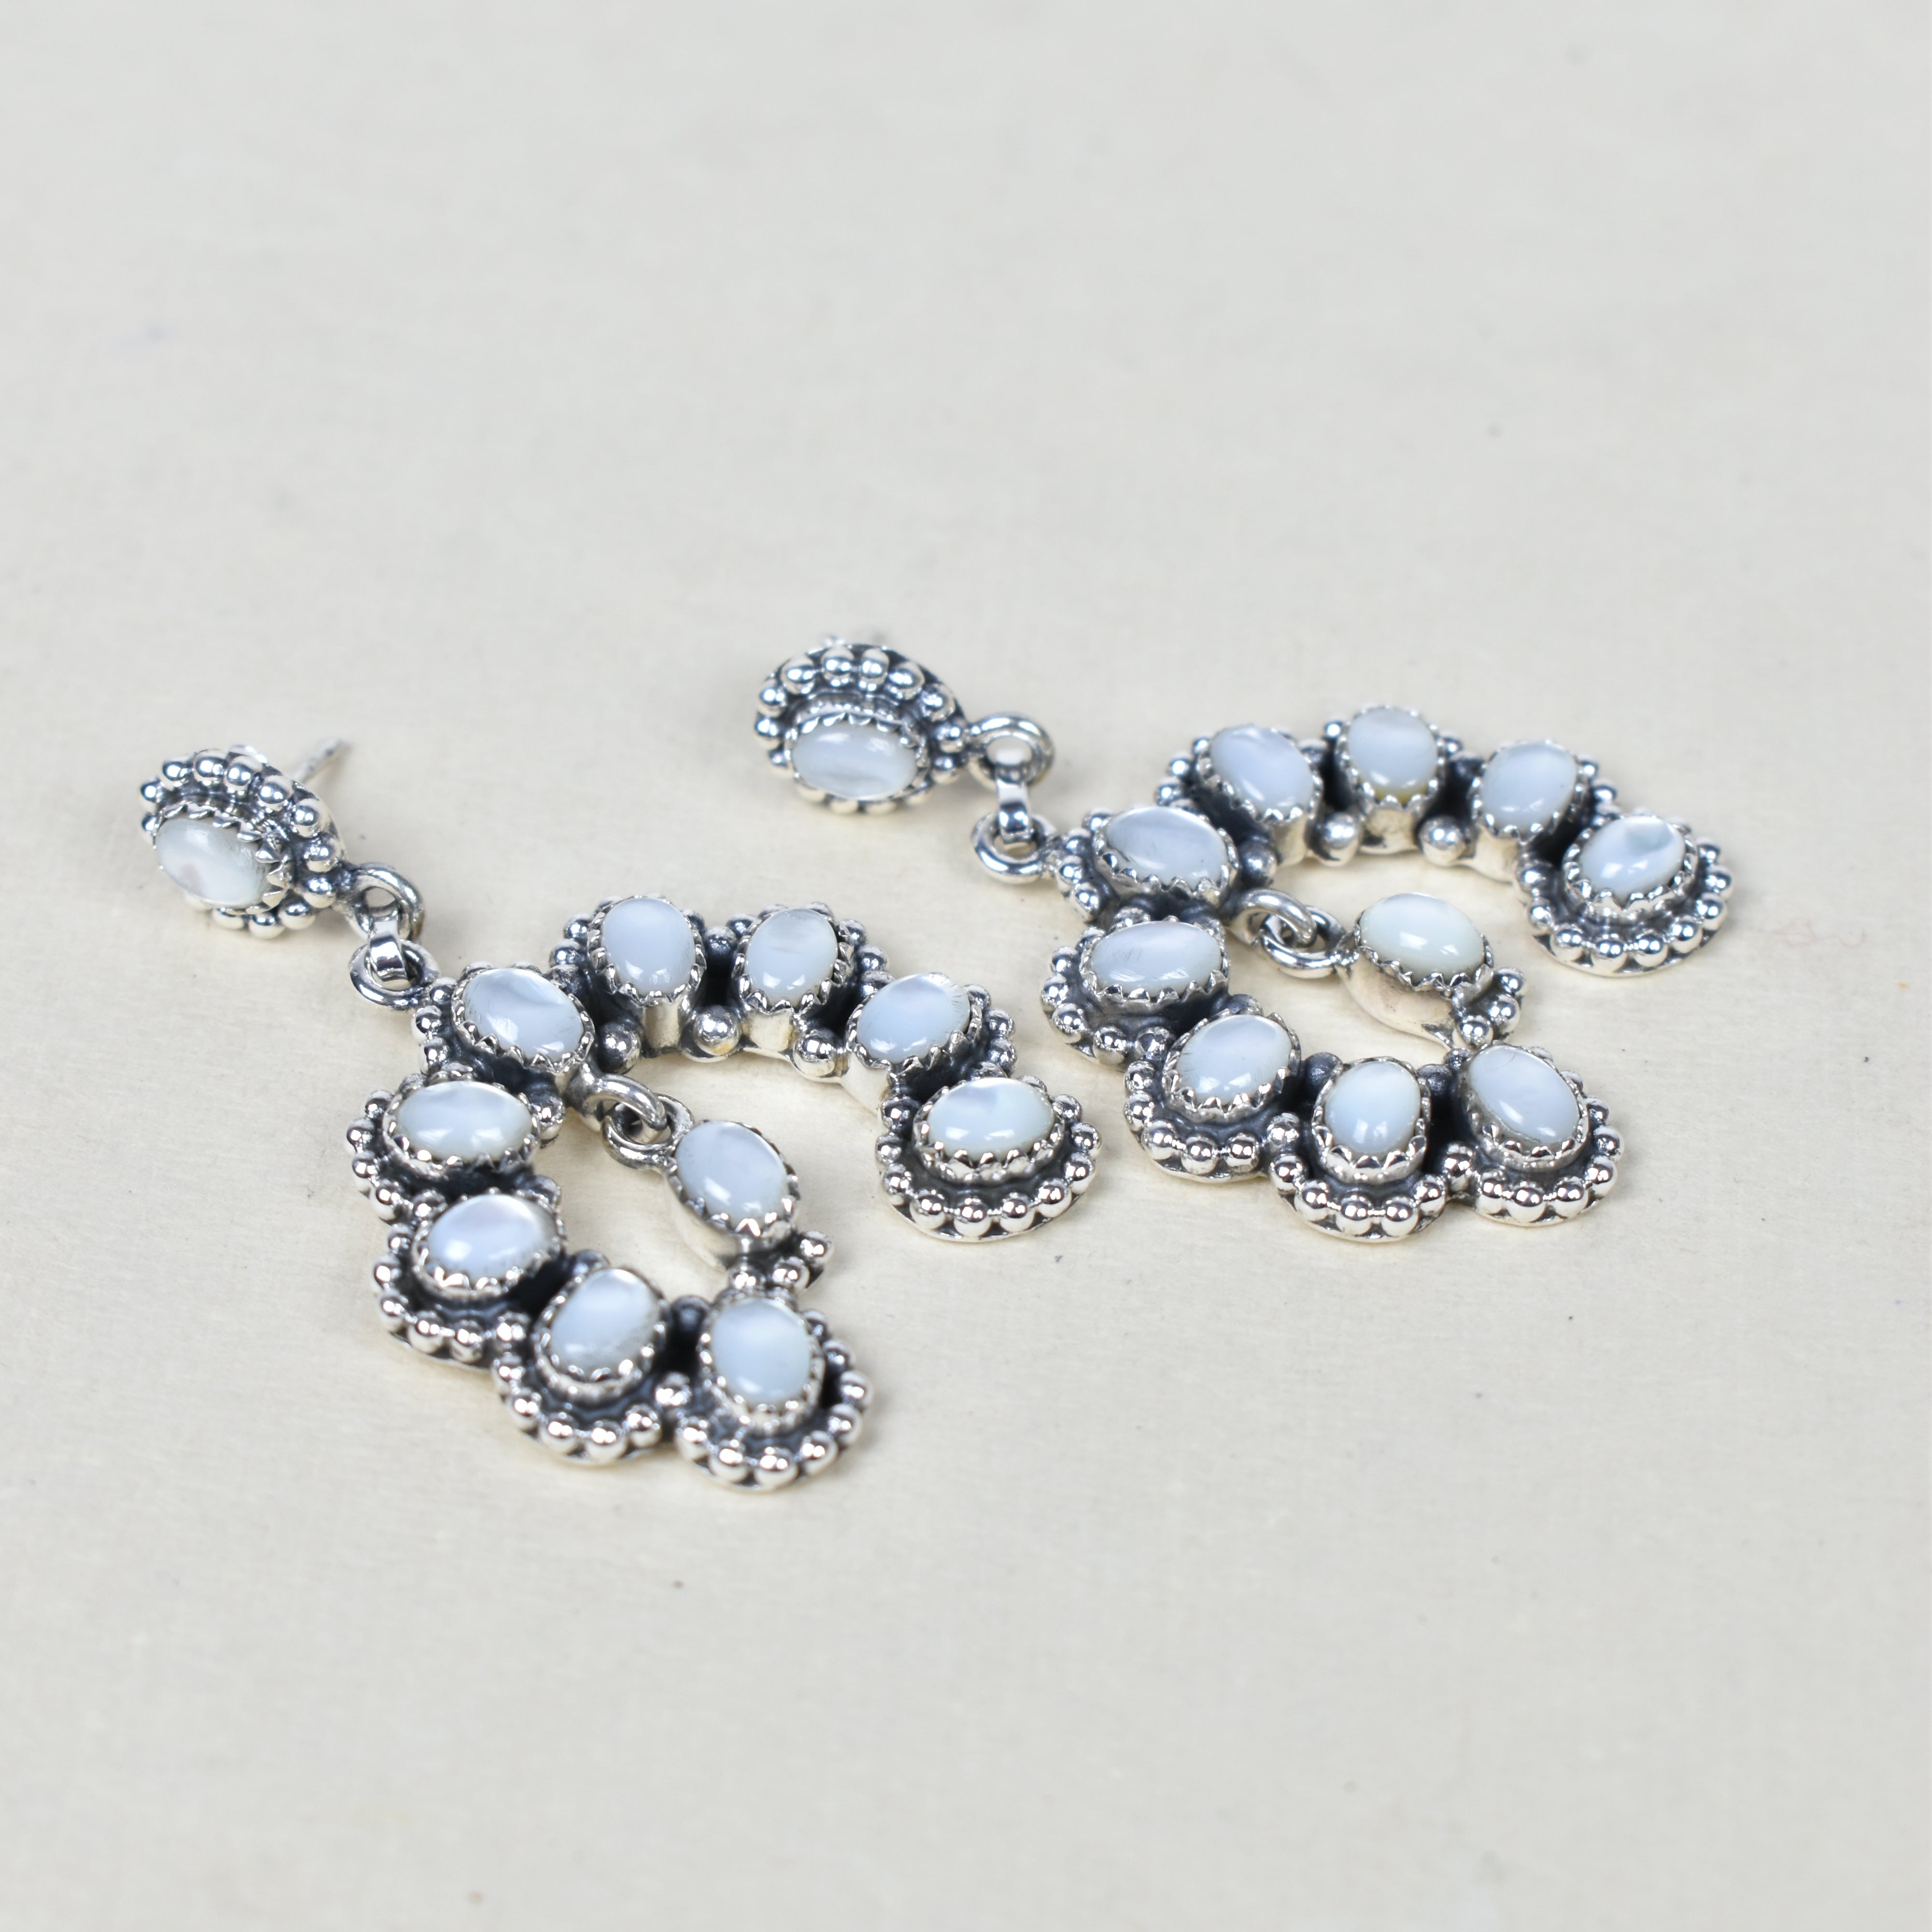 Double Luck Sterling Silver Earrings-Earrings-Krush Kandy, Women's Online Fashion Boutique Located in Phoenix, Arizona (Scottsdale Area)